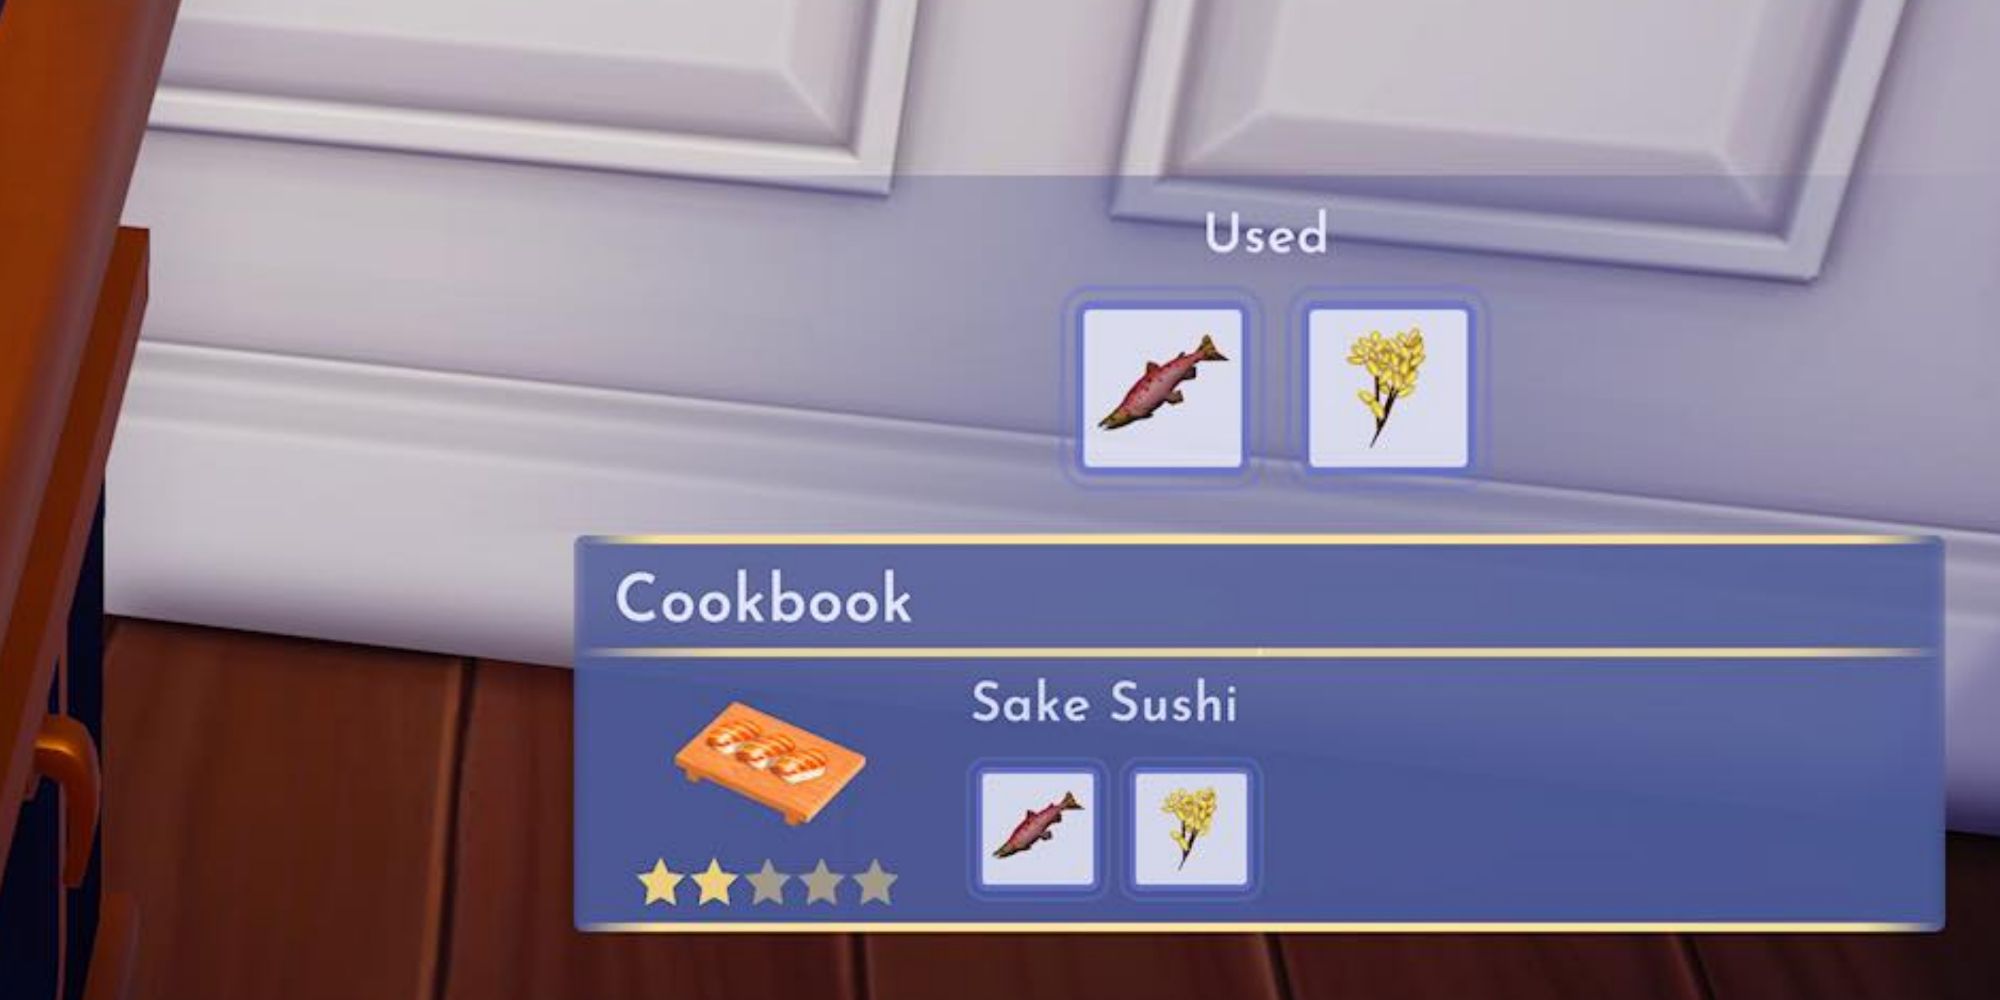 sake sushi recipe